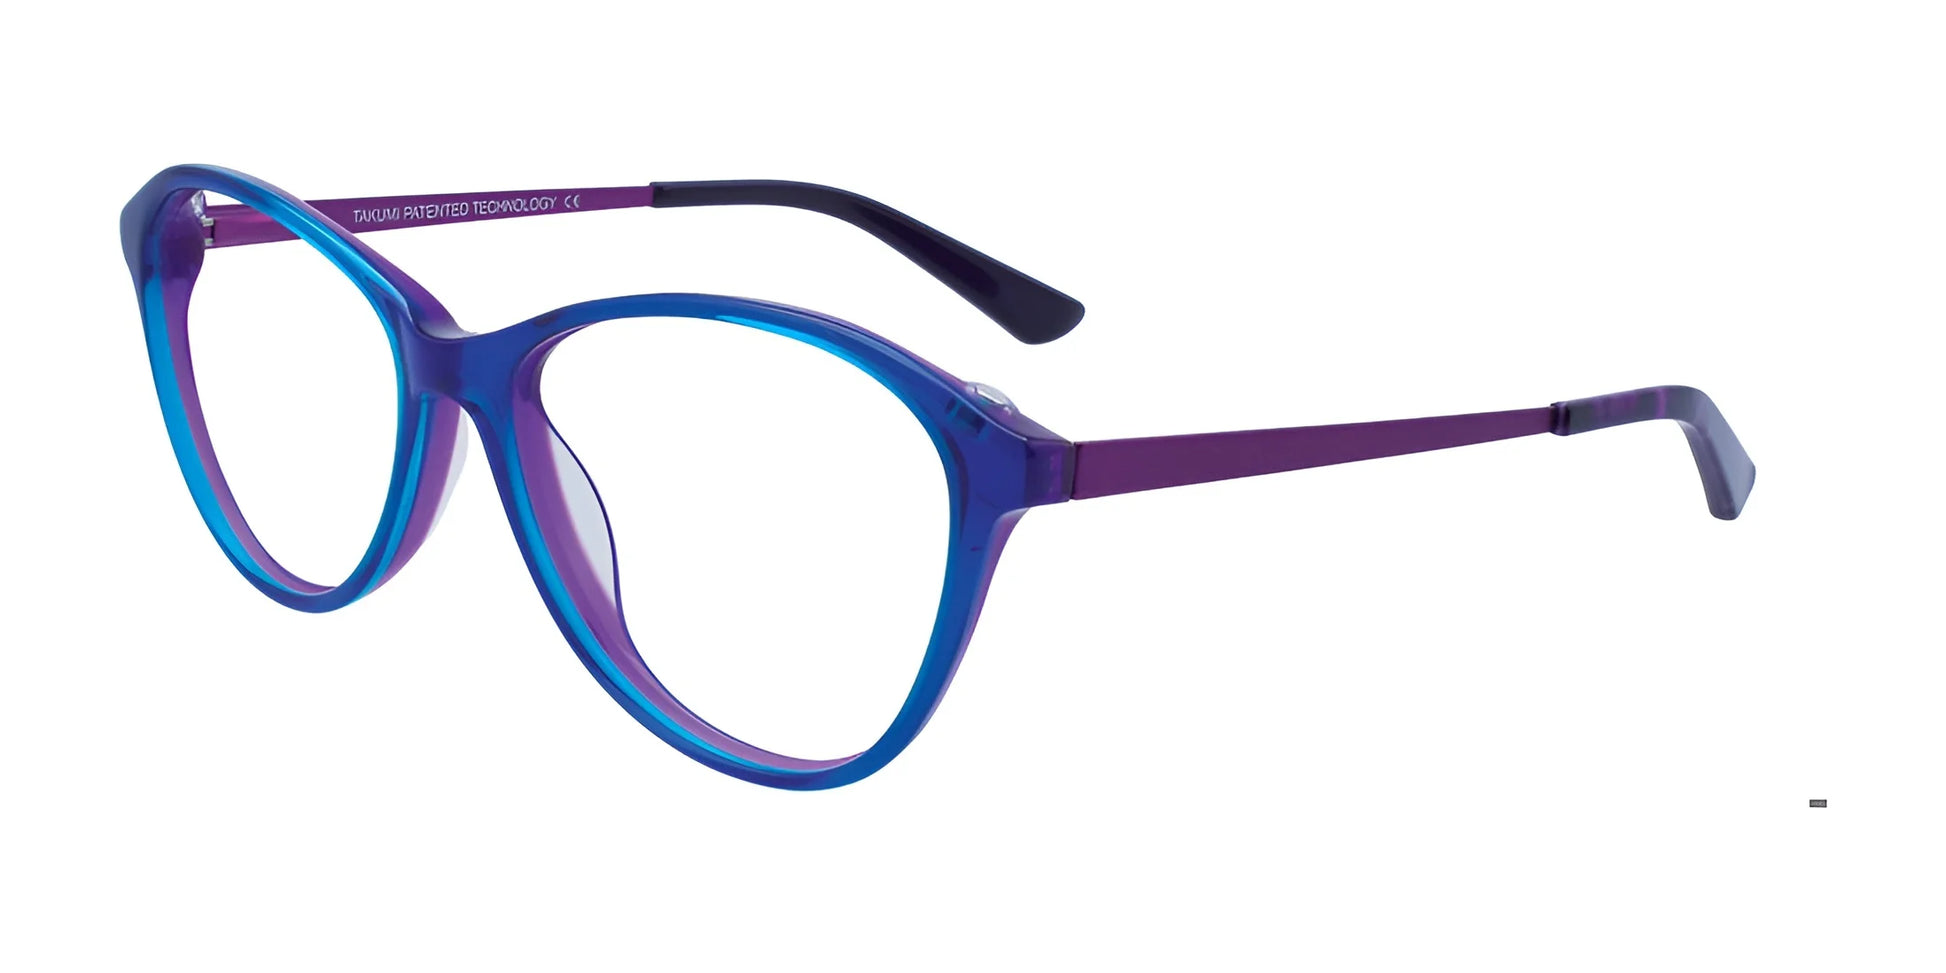 Takumi TK996 Eyeglasses with Clip-on Sunglasses Blue & Purple